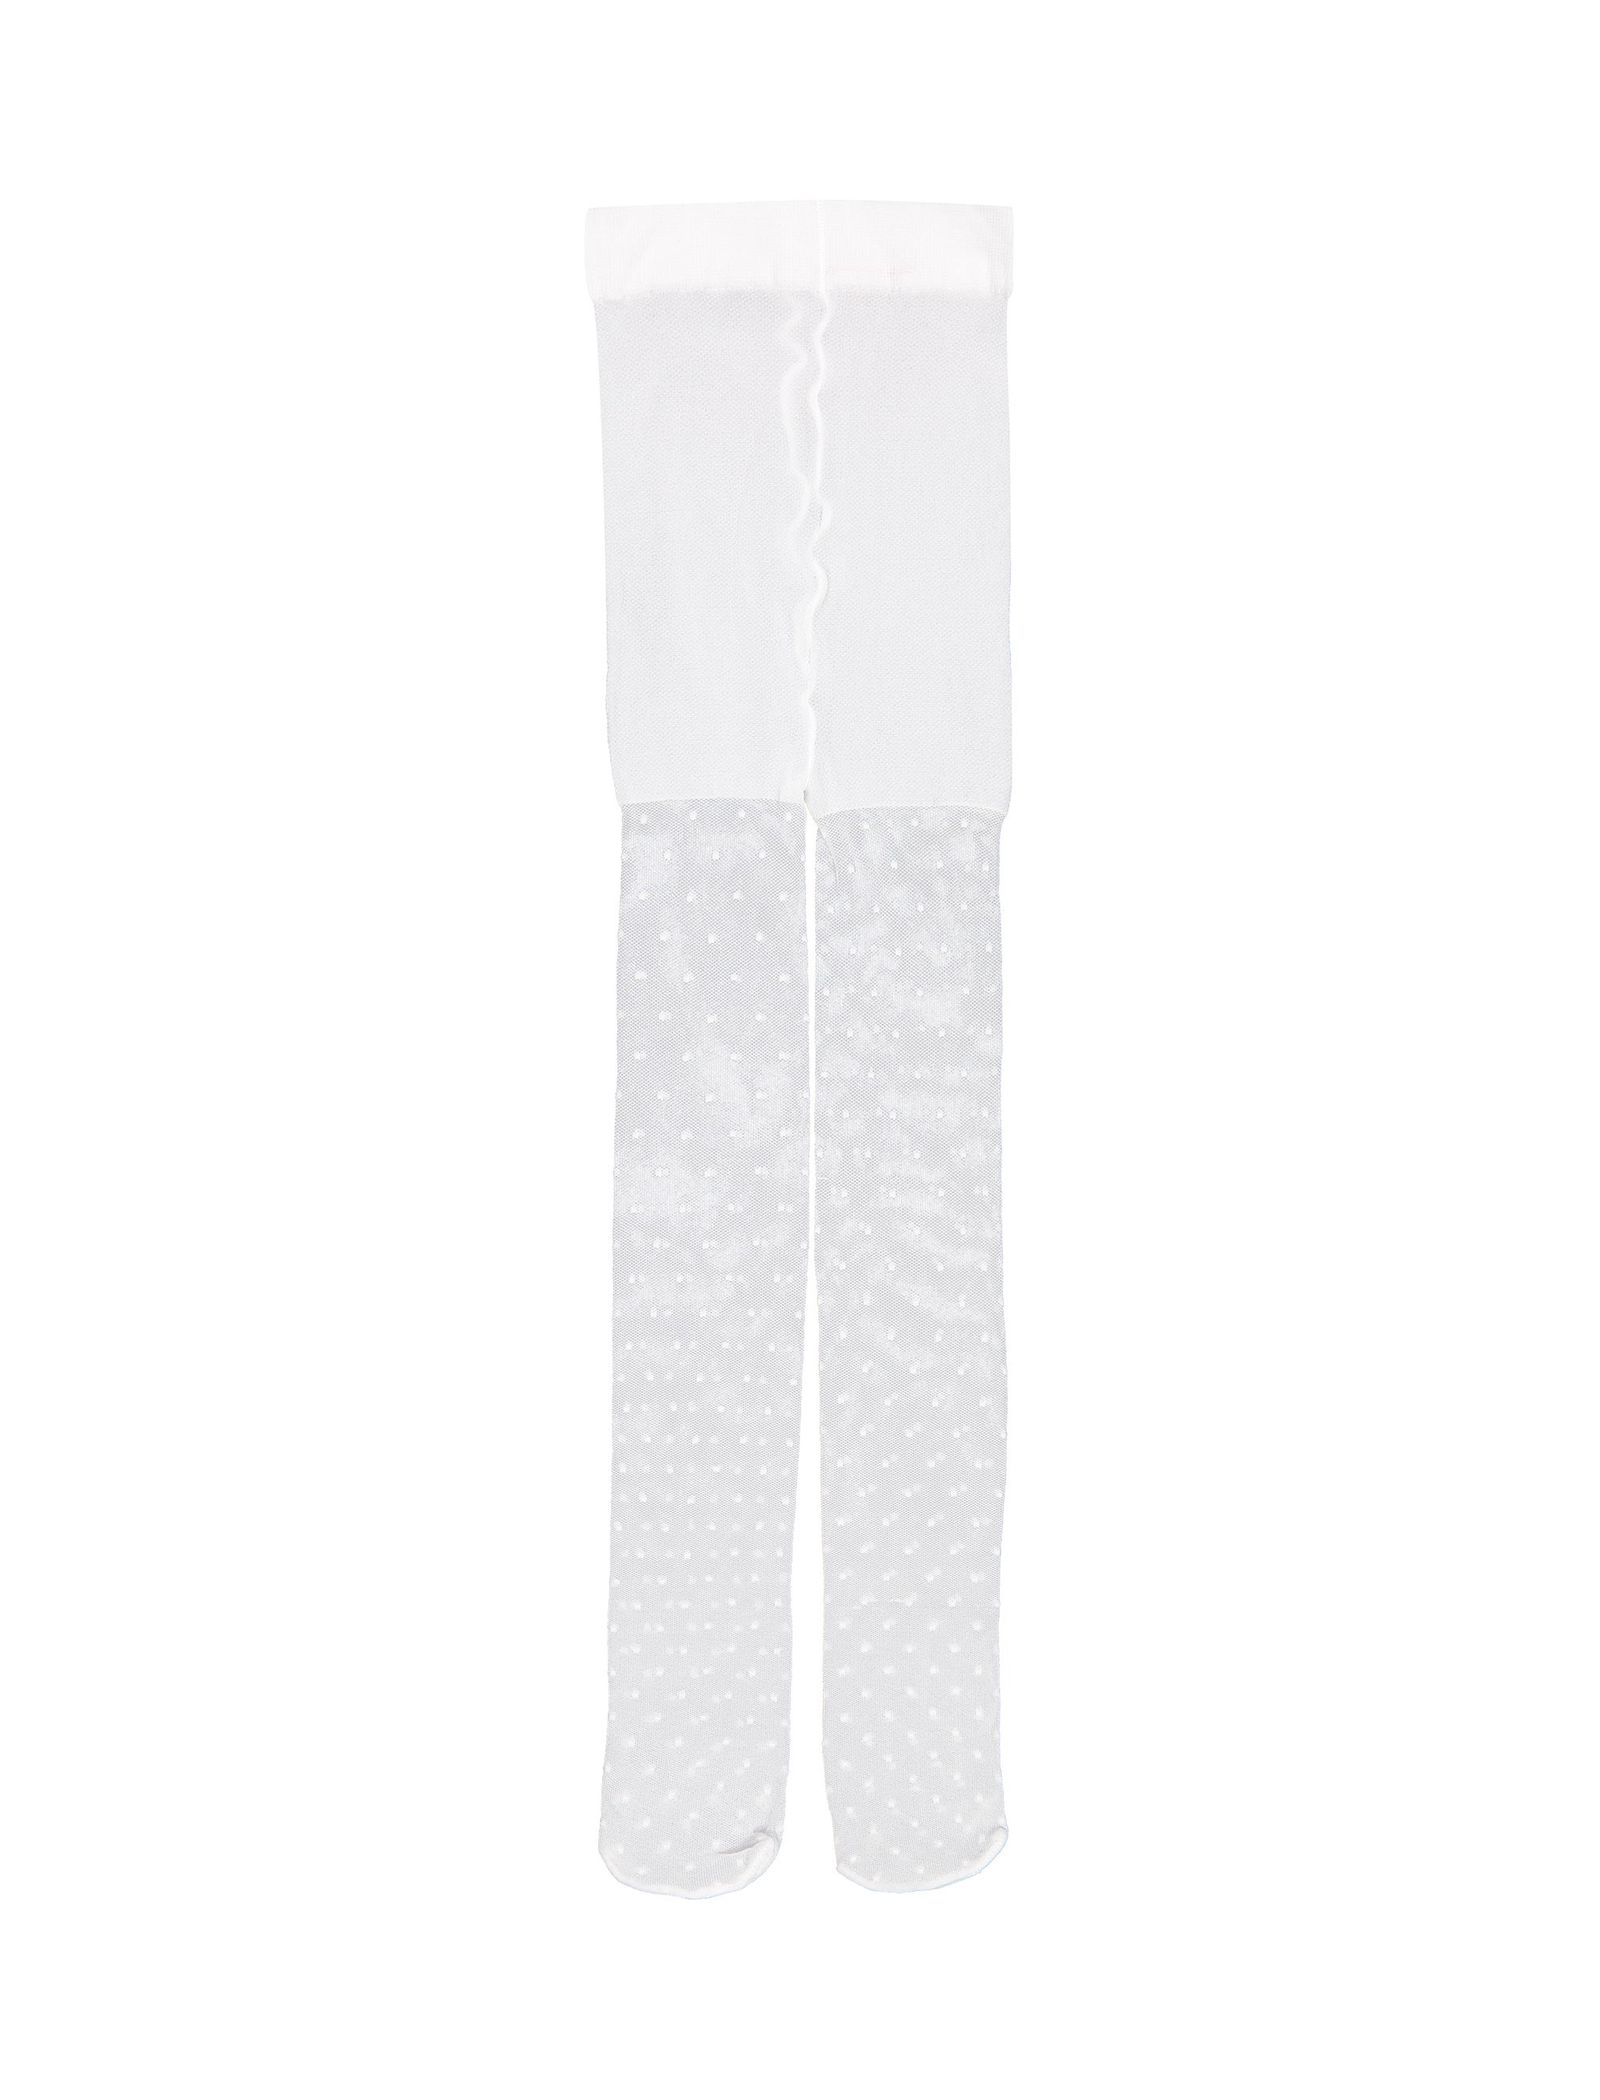 جوراب شلواری طرح دار دخترانه - ایدکس - سفيد - 1